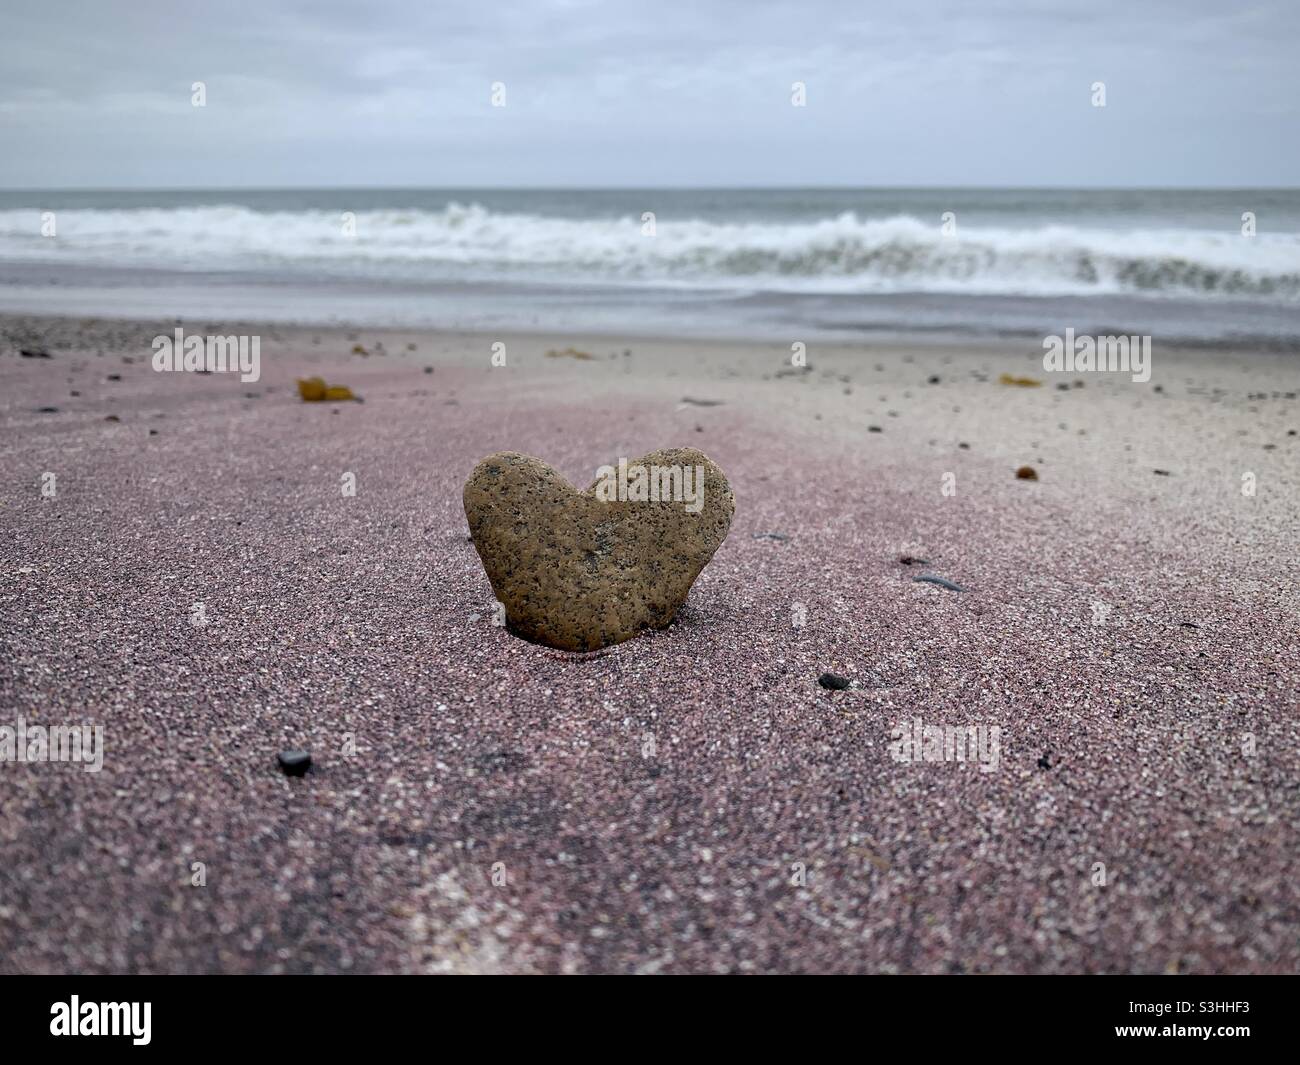 Una roccia a forma di cuore si stacca dalla sabbia su una spiaggia californiana. La sabbia circostante è porpora rosa. Foto Stock